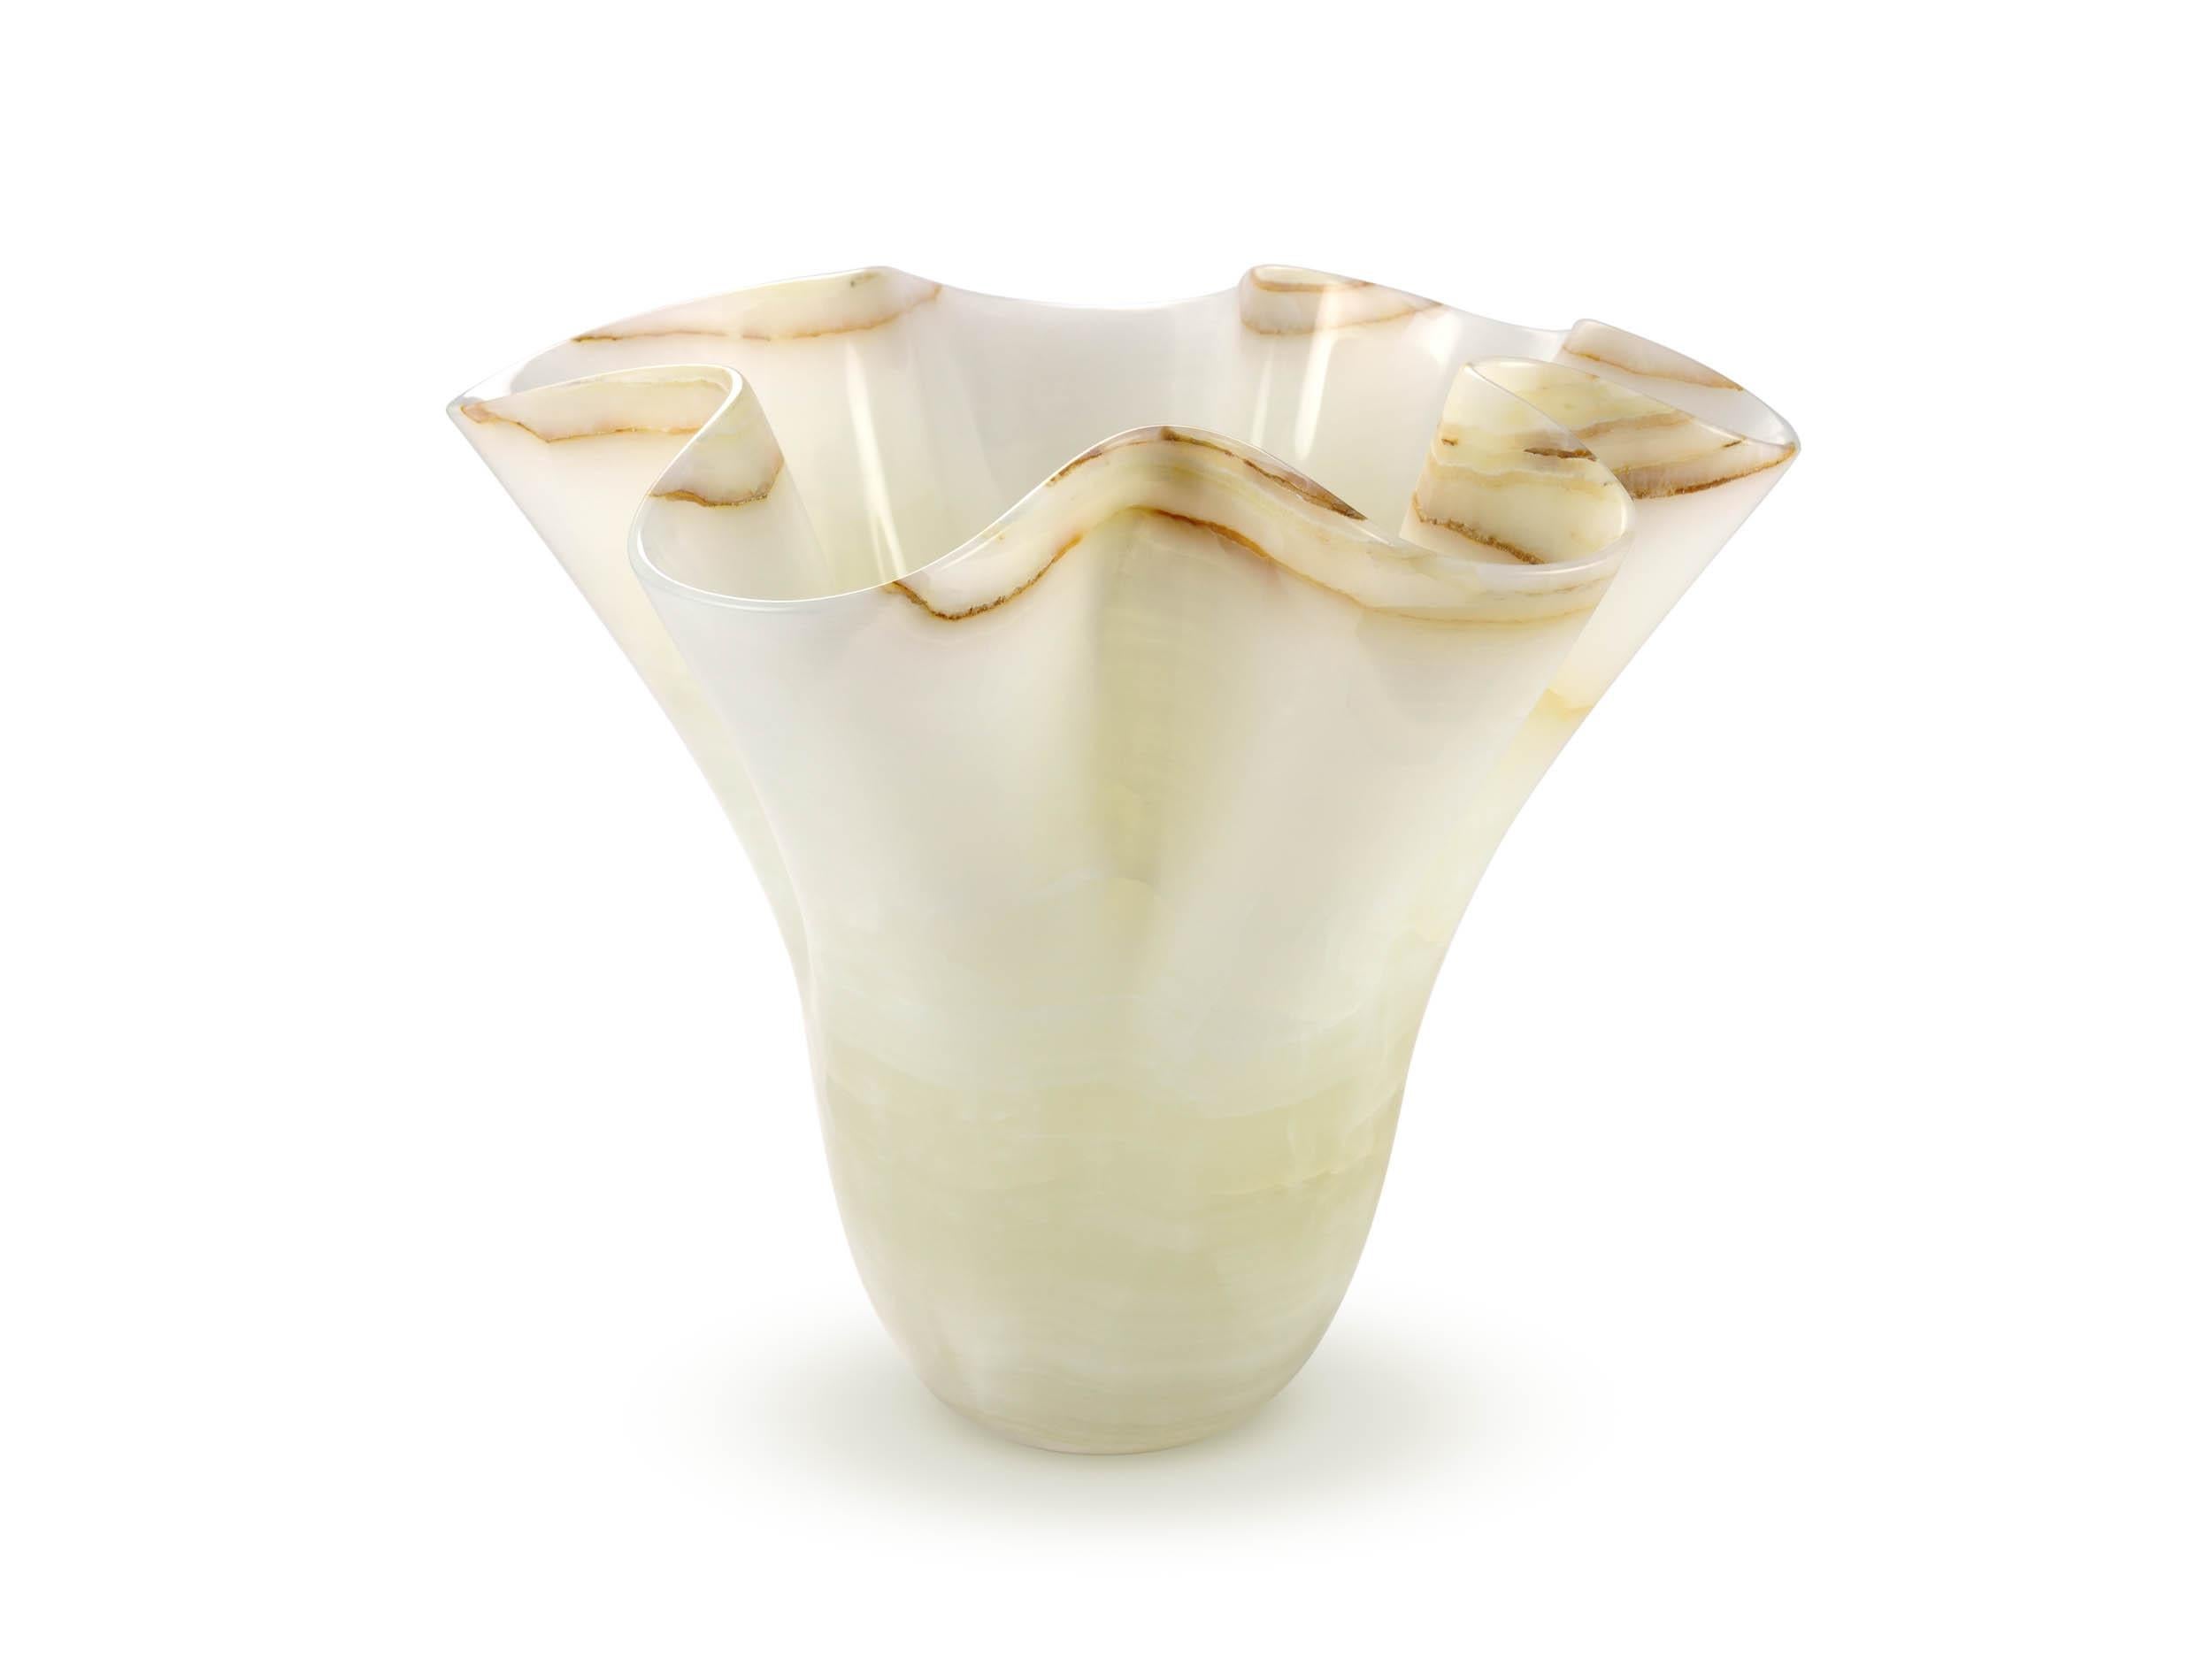 Important vase sculptural taillé à la main dans un bloc massif d'onyx blanc pur. Le vase est sculpté à la main, à partir d'un grand bloc d'onyx blanc soigneusement sélectionné. La rareté de ce matériau tient à la fois à sa pureté et à sa compacité :